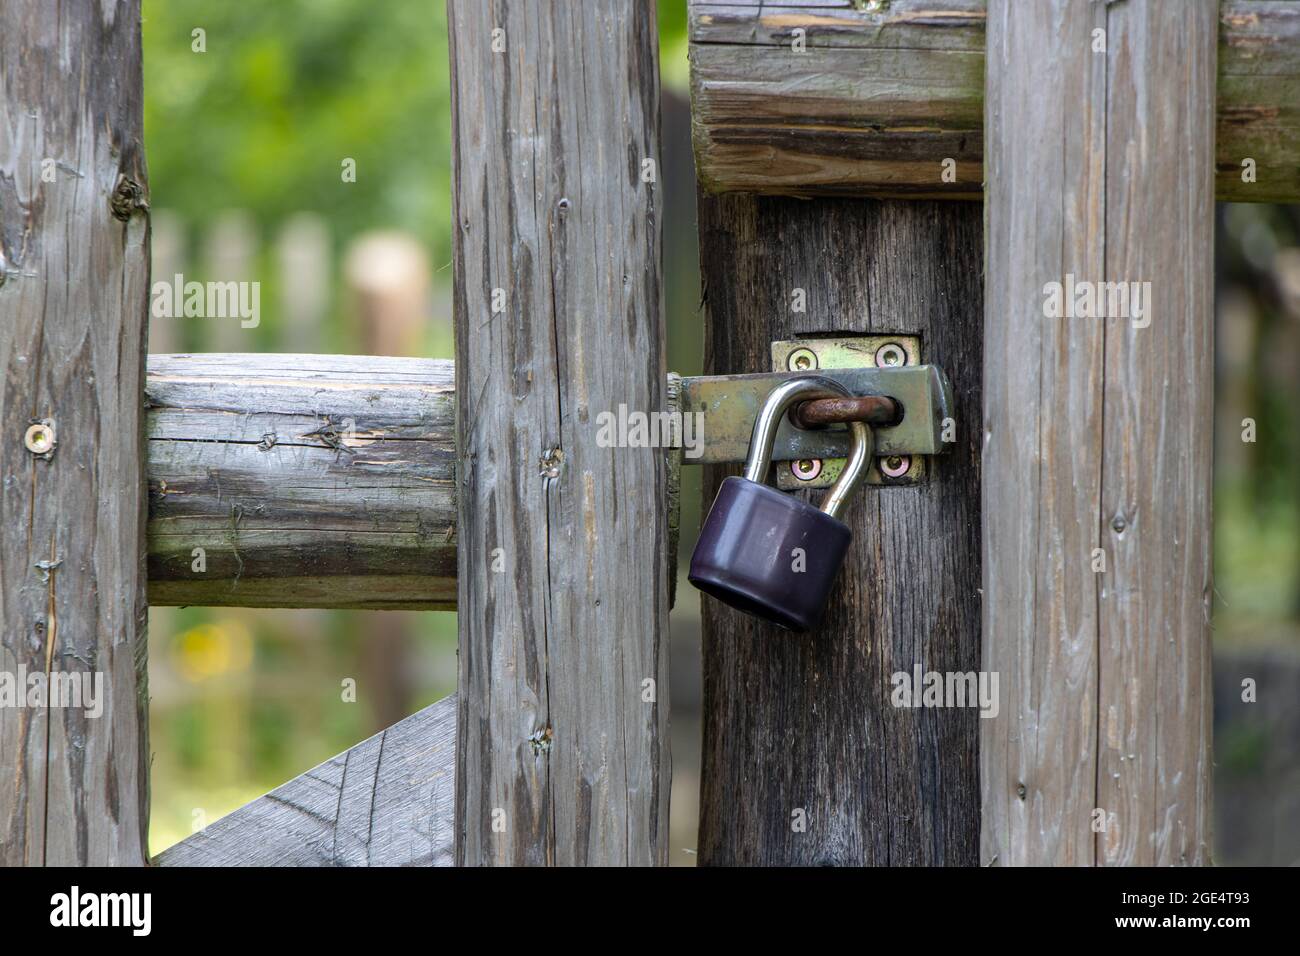 Le cadenas est verrouillé sur une porte dans une clôture en bois. Banque D'Images